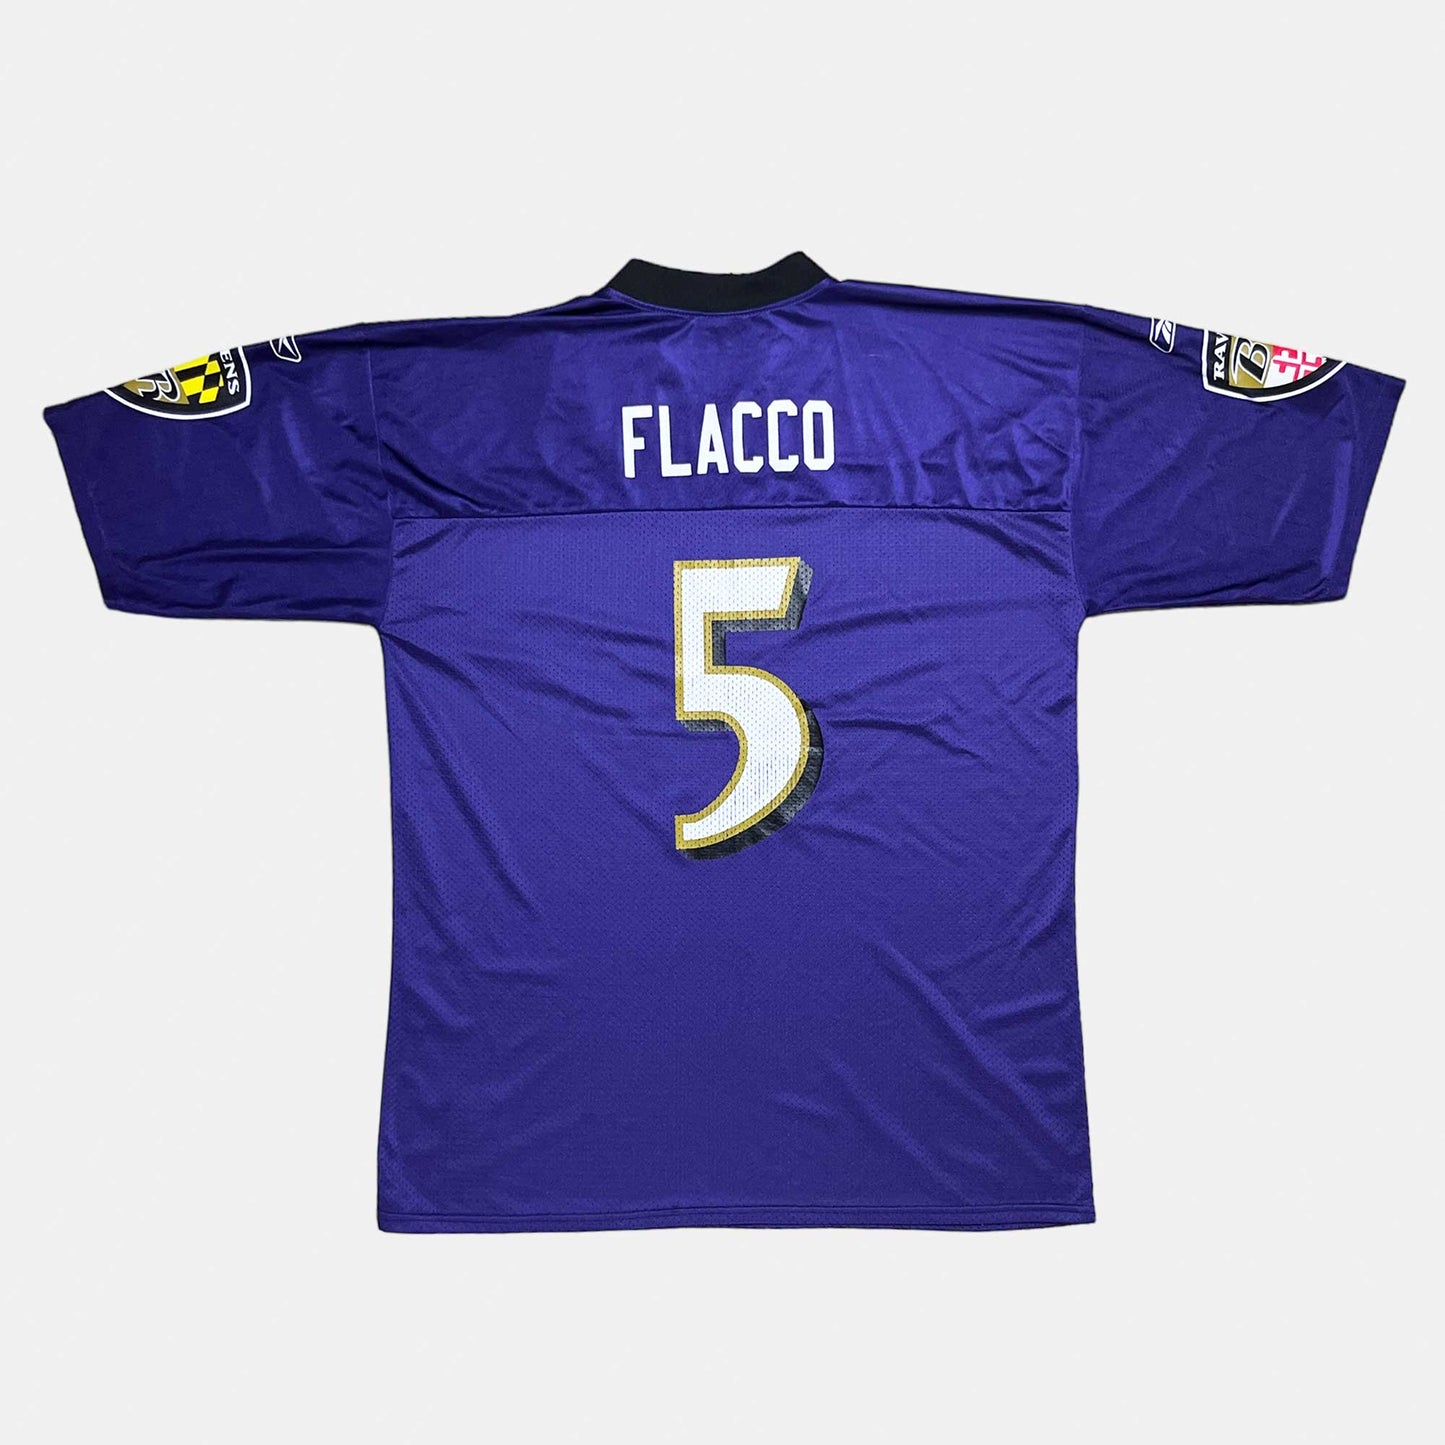 Baltimore Ravens - Joe Flacco - Größe XL - Reebok - NFL Trikot